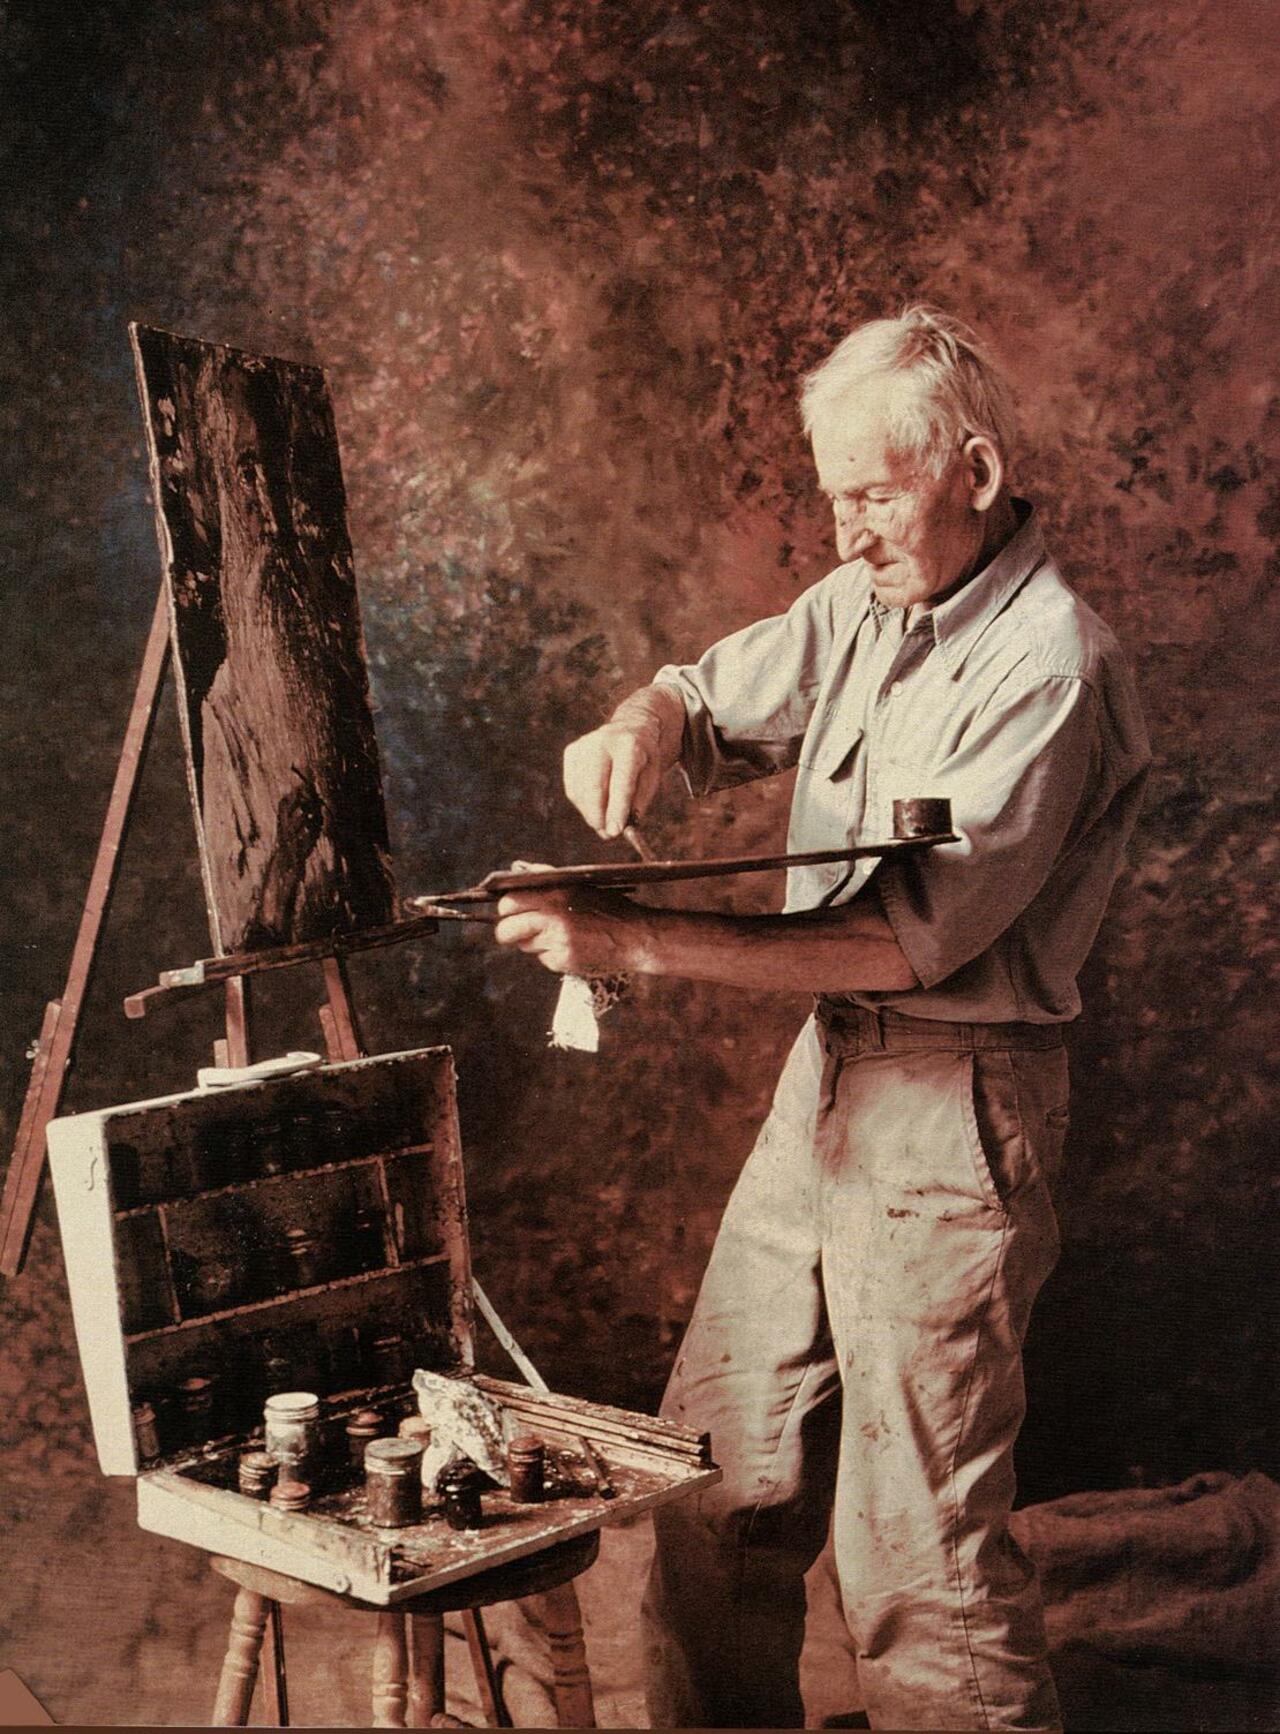 A BRILLIANT AMERICAN ARTIST Samuel Rothbort 1882-1971. Visit http://www.davidsartexpo.com #postimpressionism #impressionism http://t.co/b5BBJB62Zp